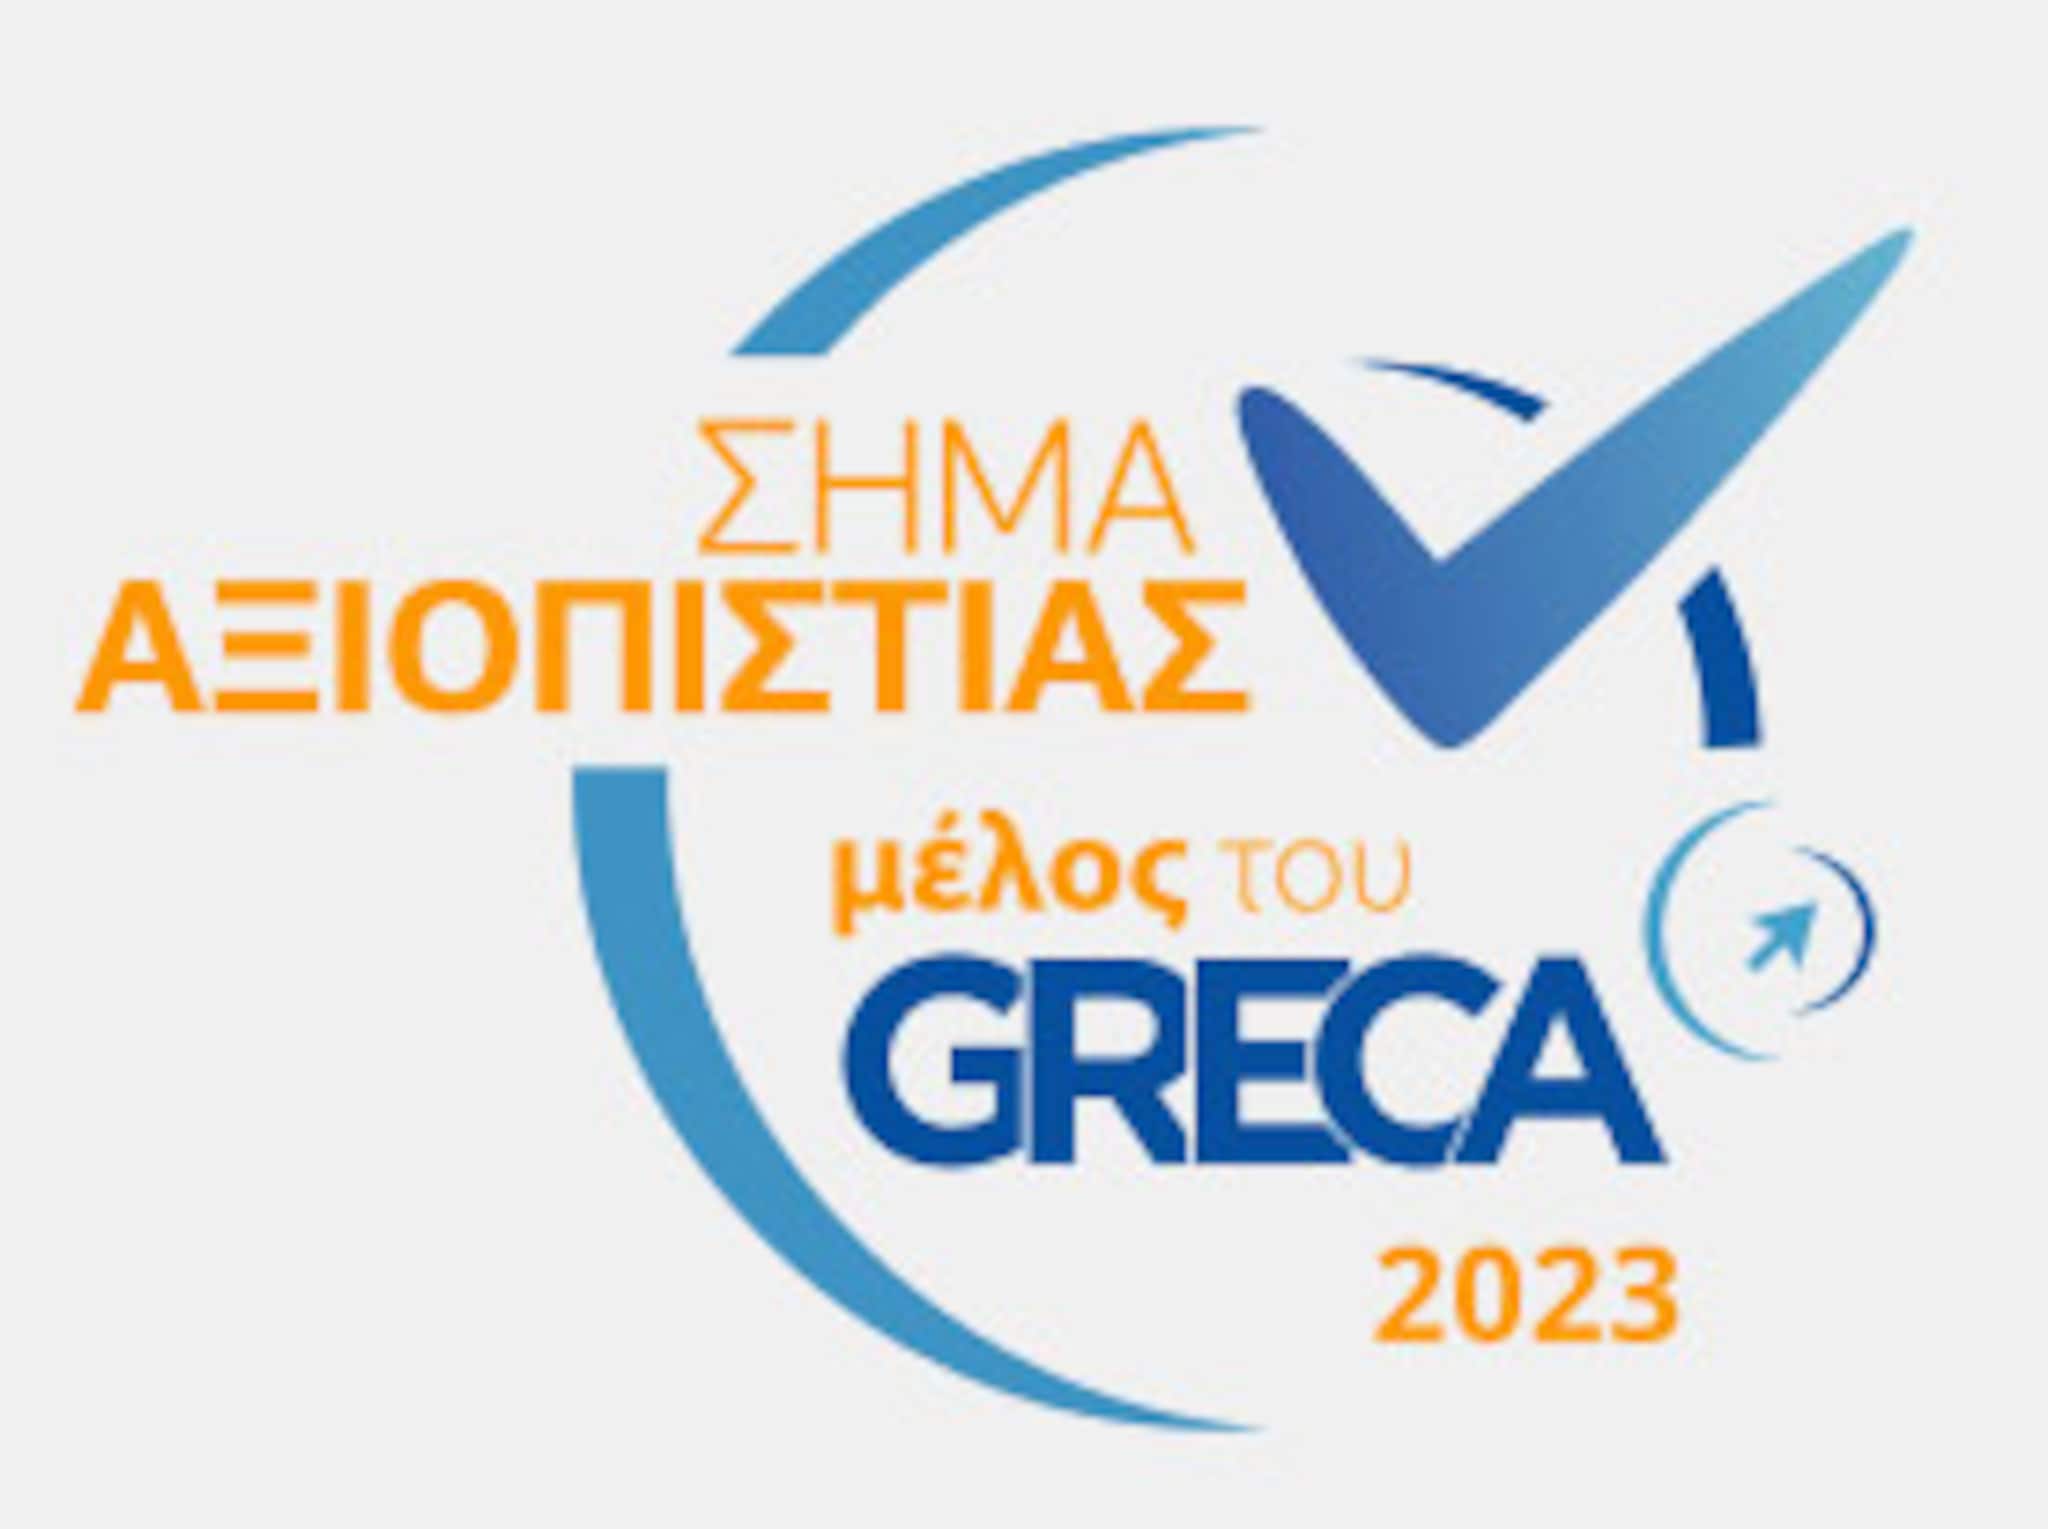 GRECA award